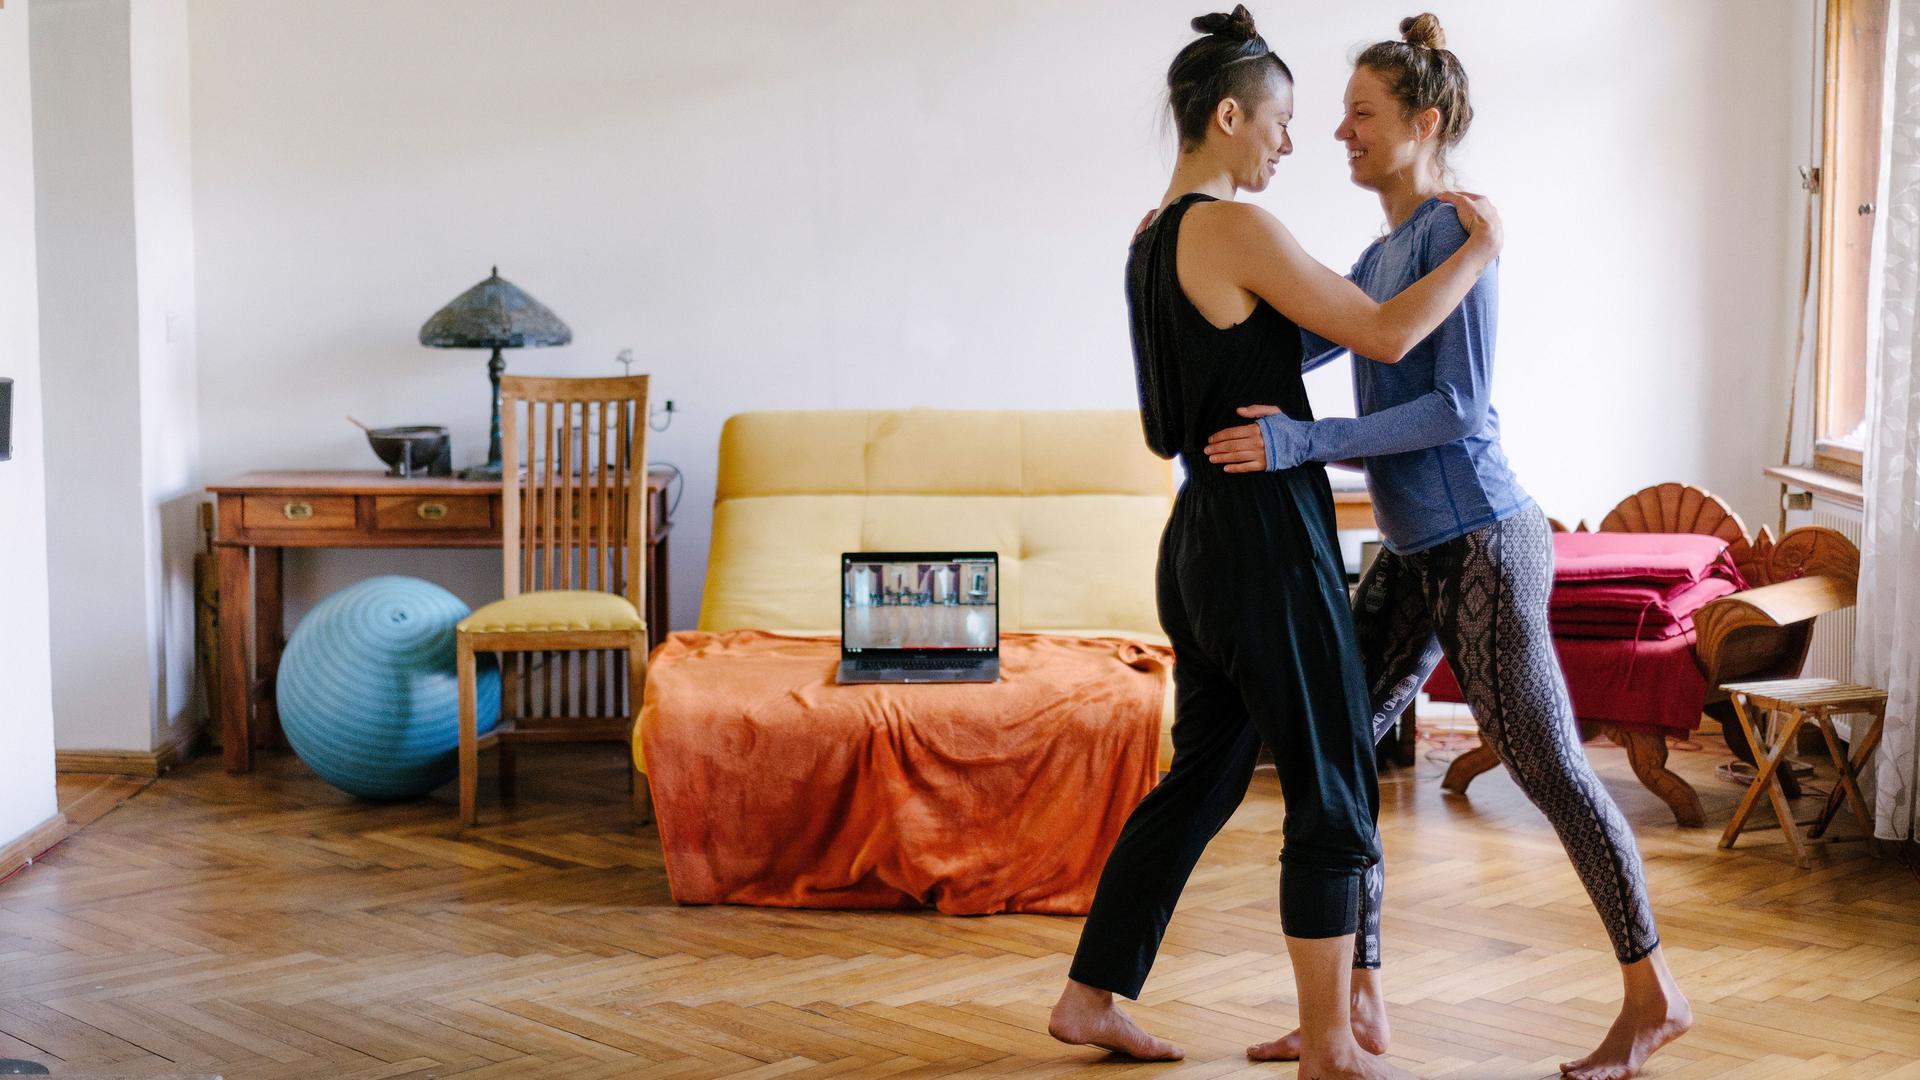 Zwei Frauen tanzen zusammen Tango in ihrer Altbauwohnung. Im Hintergrund steht ein Laptop, auf dem ein Online-Tanzkurs zu sehen ist.